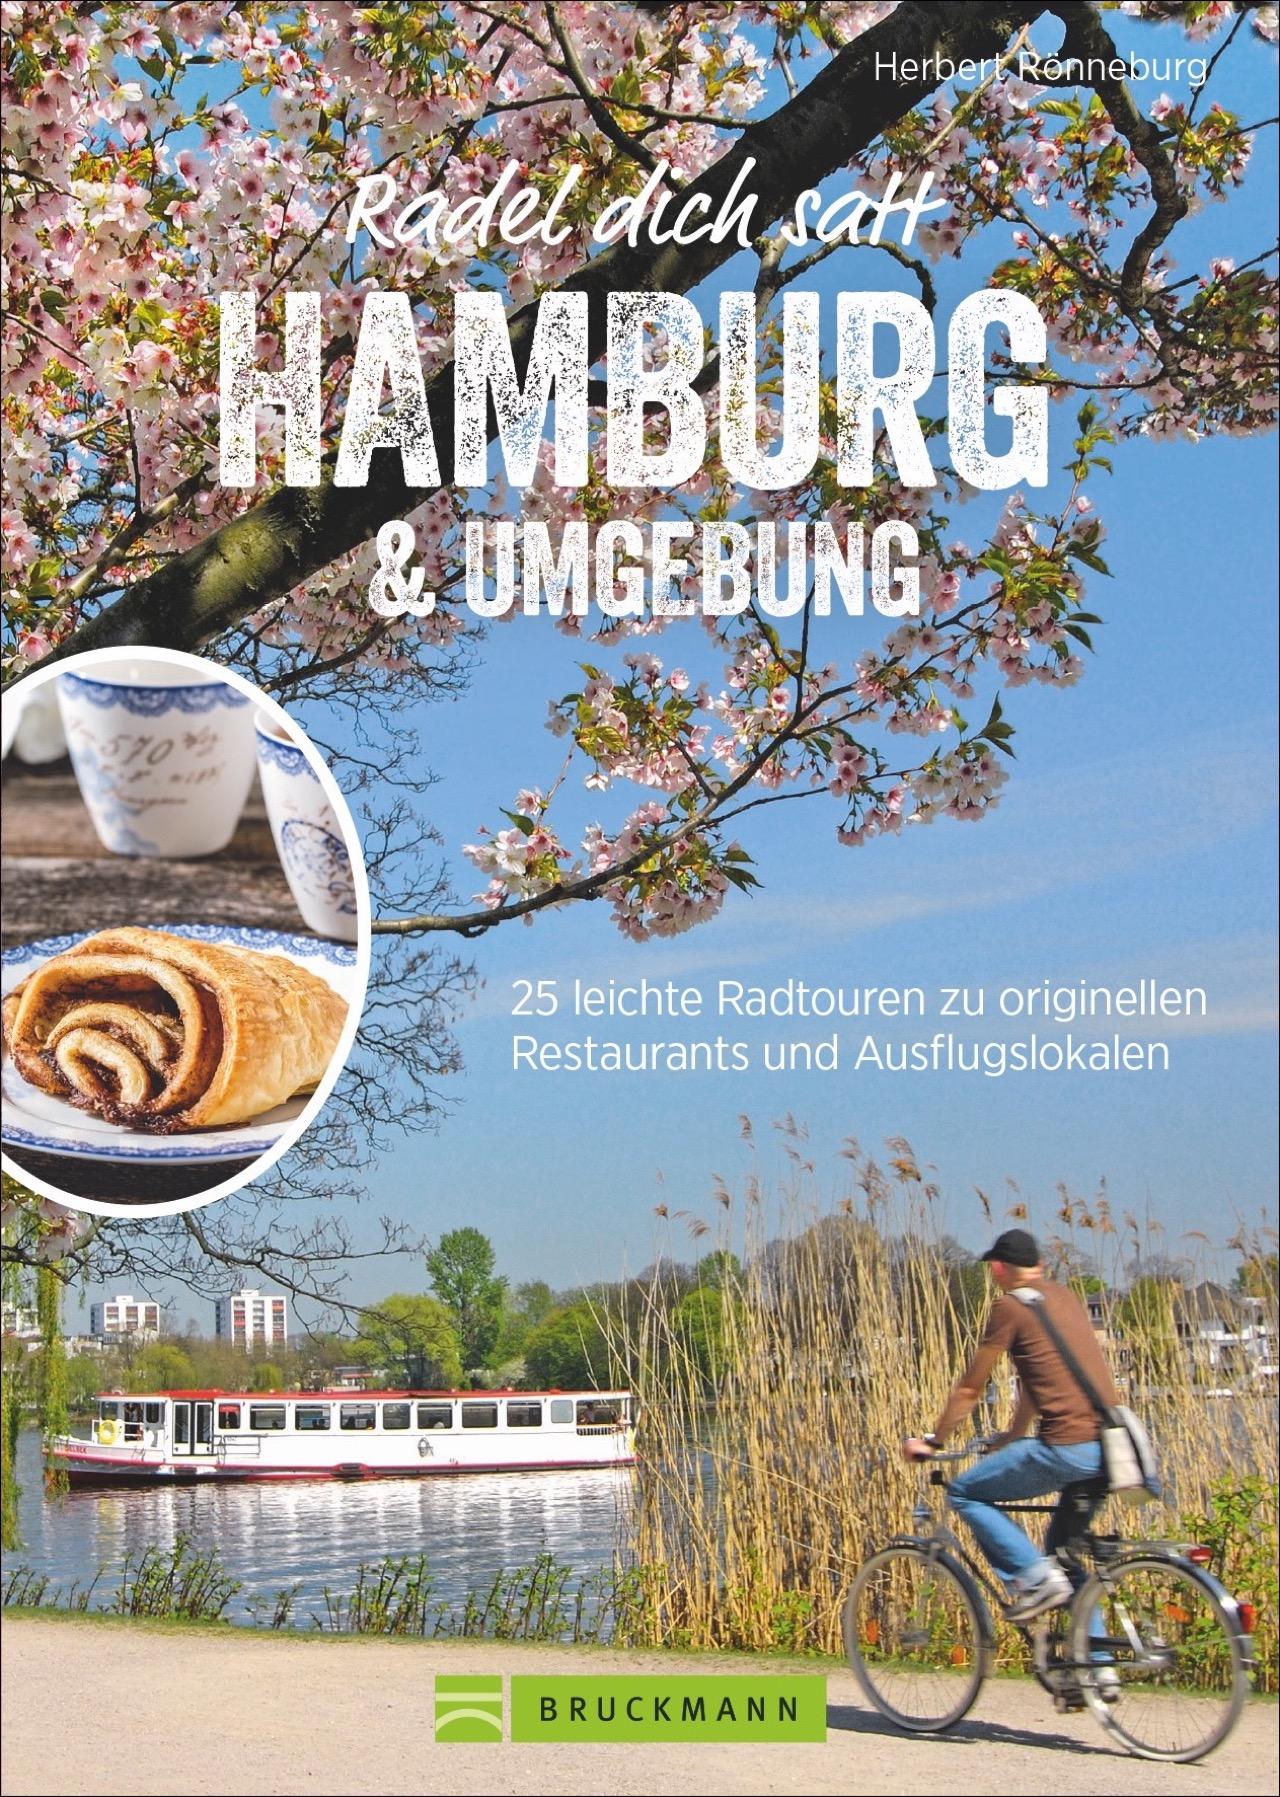 Radel dich satt Hamburg & Umgebung 25 leichte Radtouren zu originellen Restaurants und Ausflugslokalen